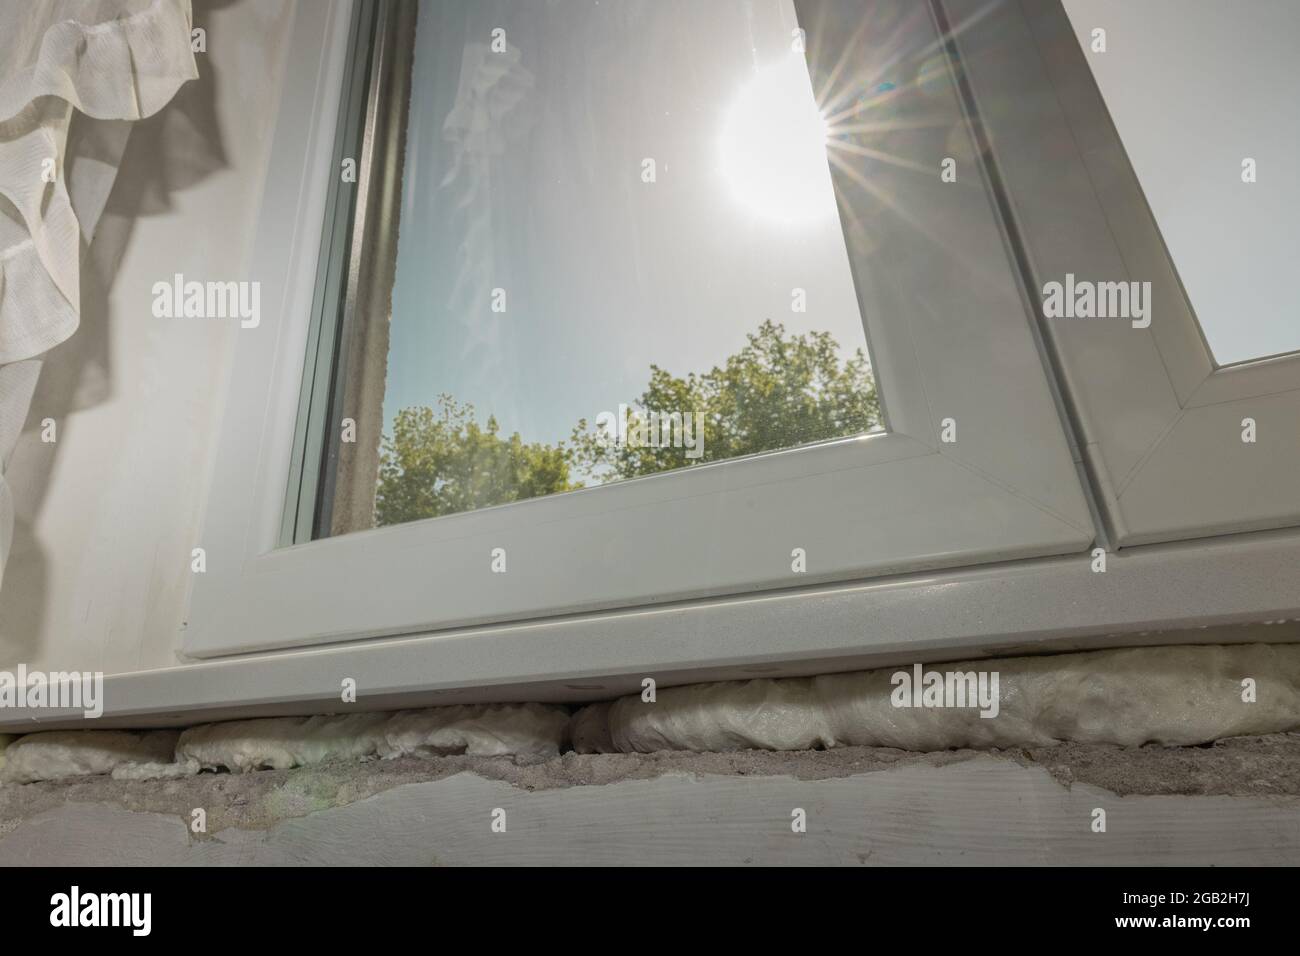 Detail aus PU-Polyurethanschaum, der zur Befestigung von Fensterleisten  oder Marmorregalen verwendet wird. Befestigung der Fensterablage  Stockfotografie - Alamy